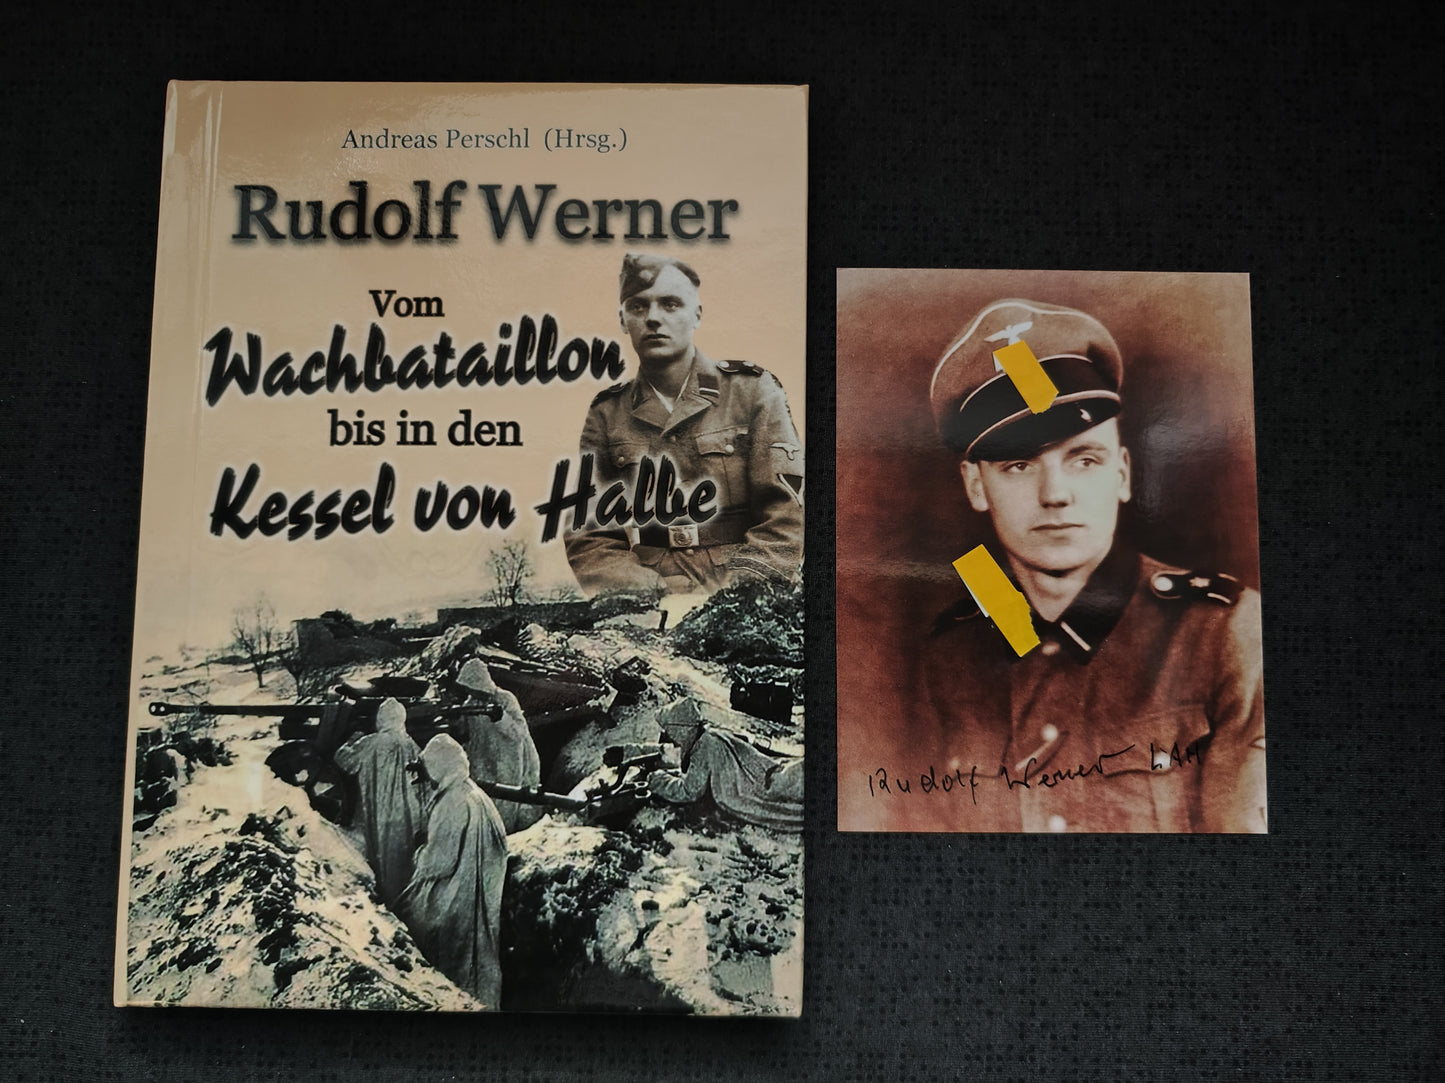 Buch "Vom Wachbataillon bis in den Kessel von Halbe" R. Werner inkl. Foto-Autogramm signiert